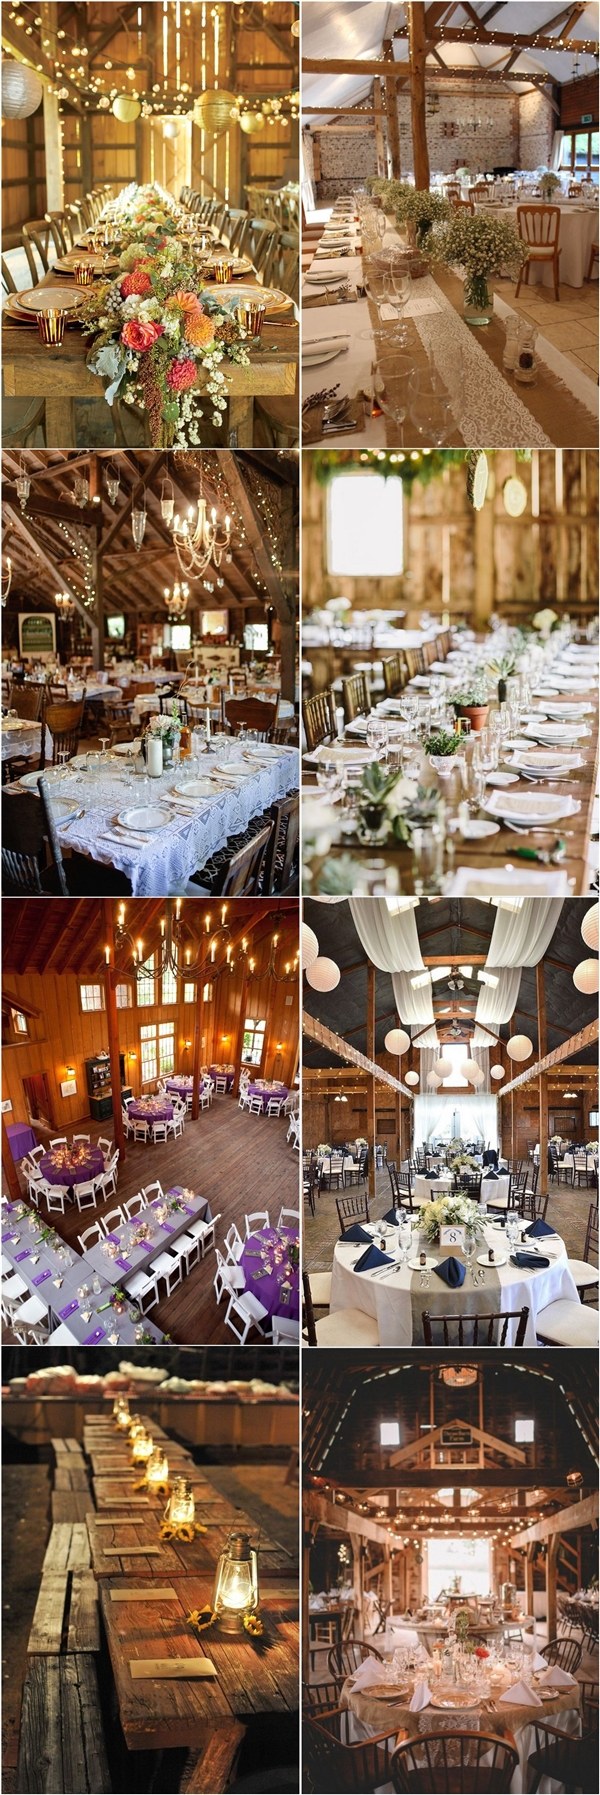 Rustic Barn Wedding Reception Table Setting Ideas